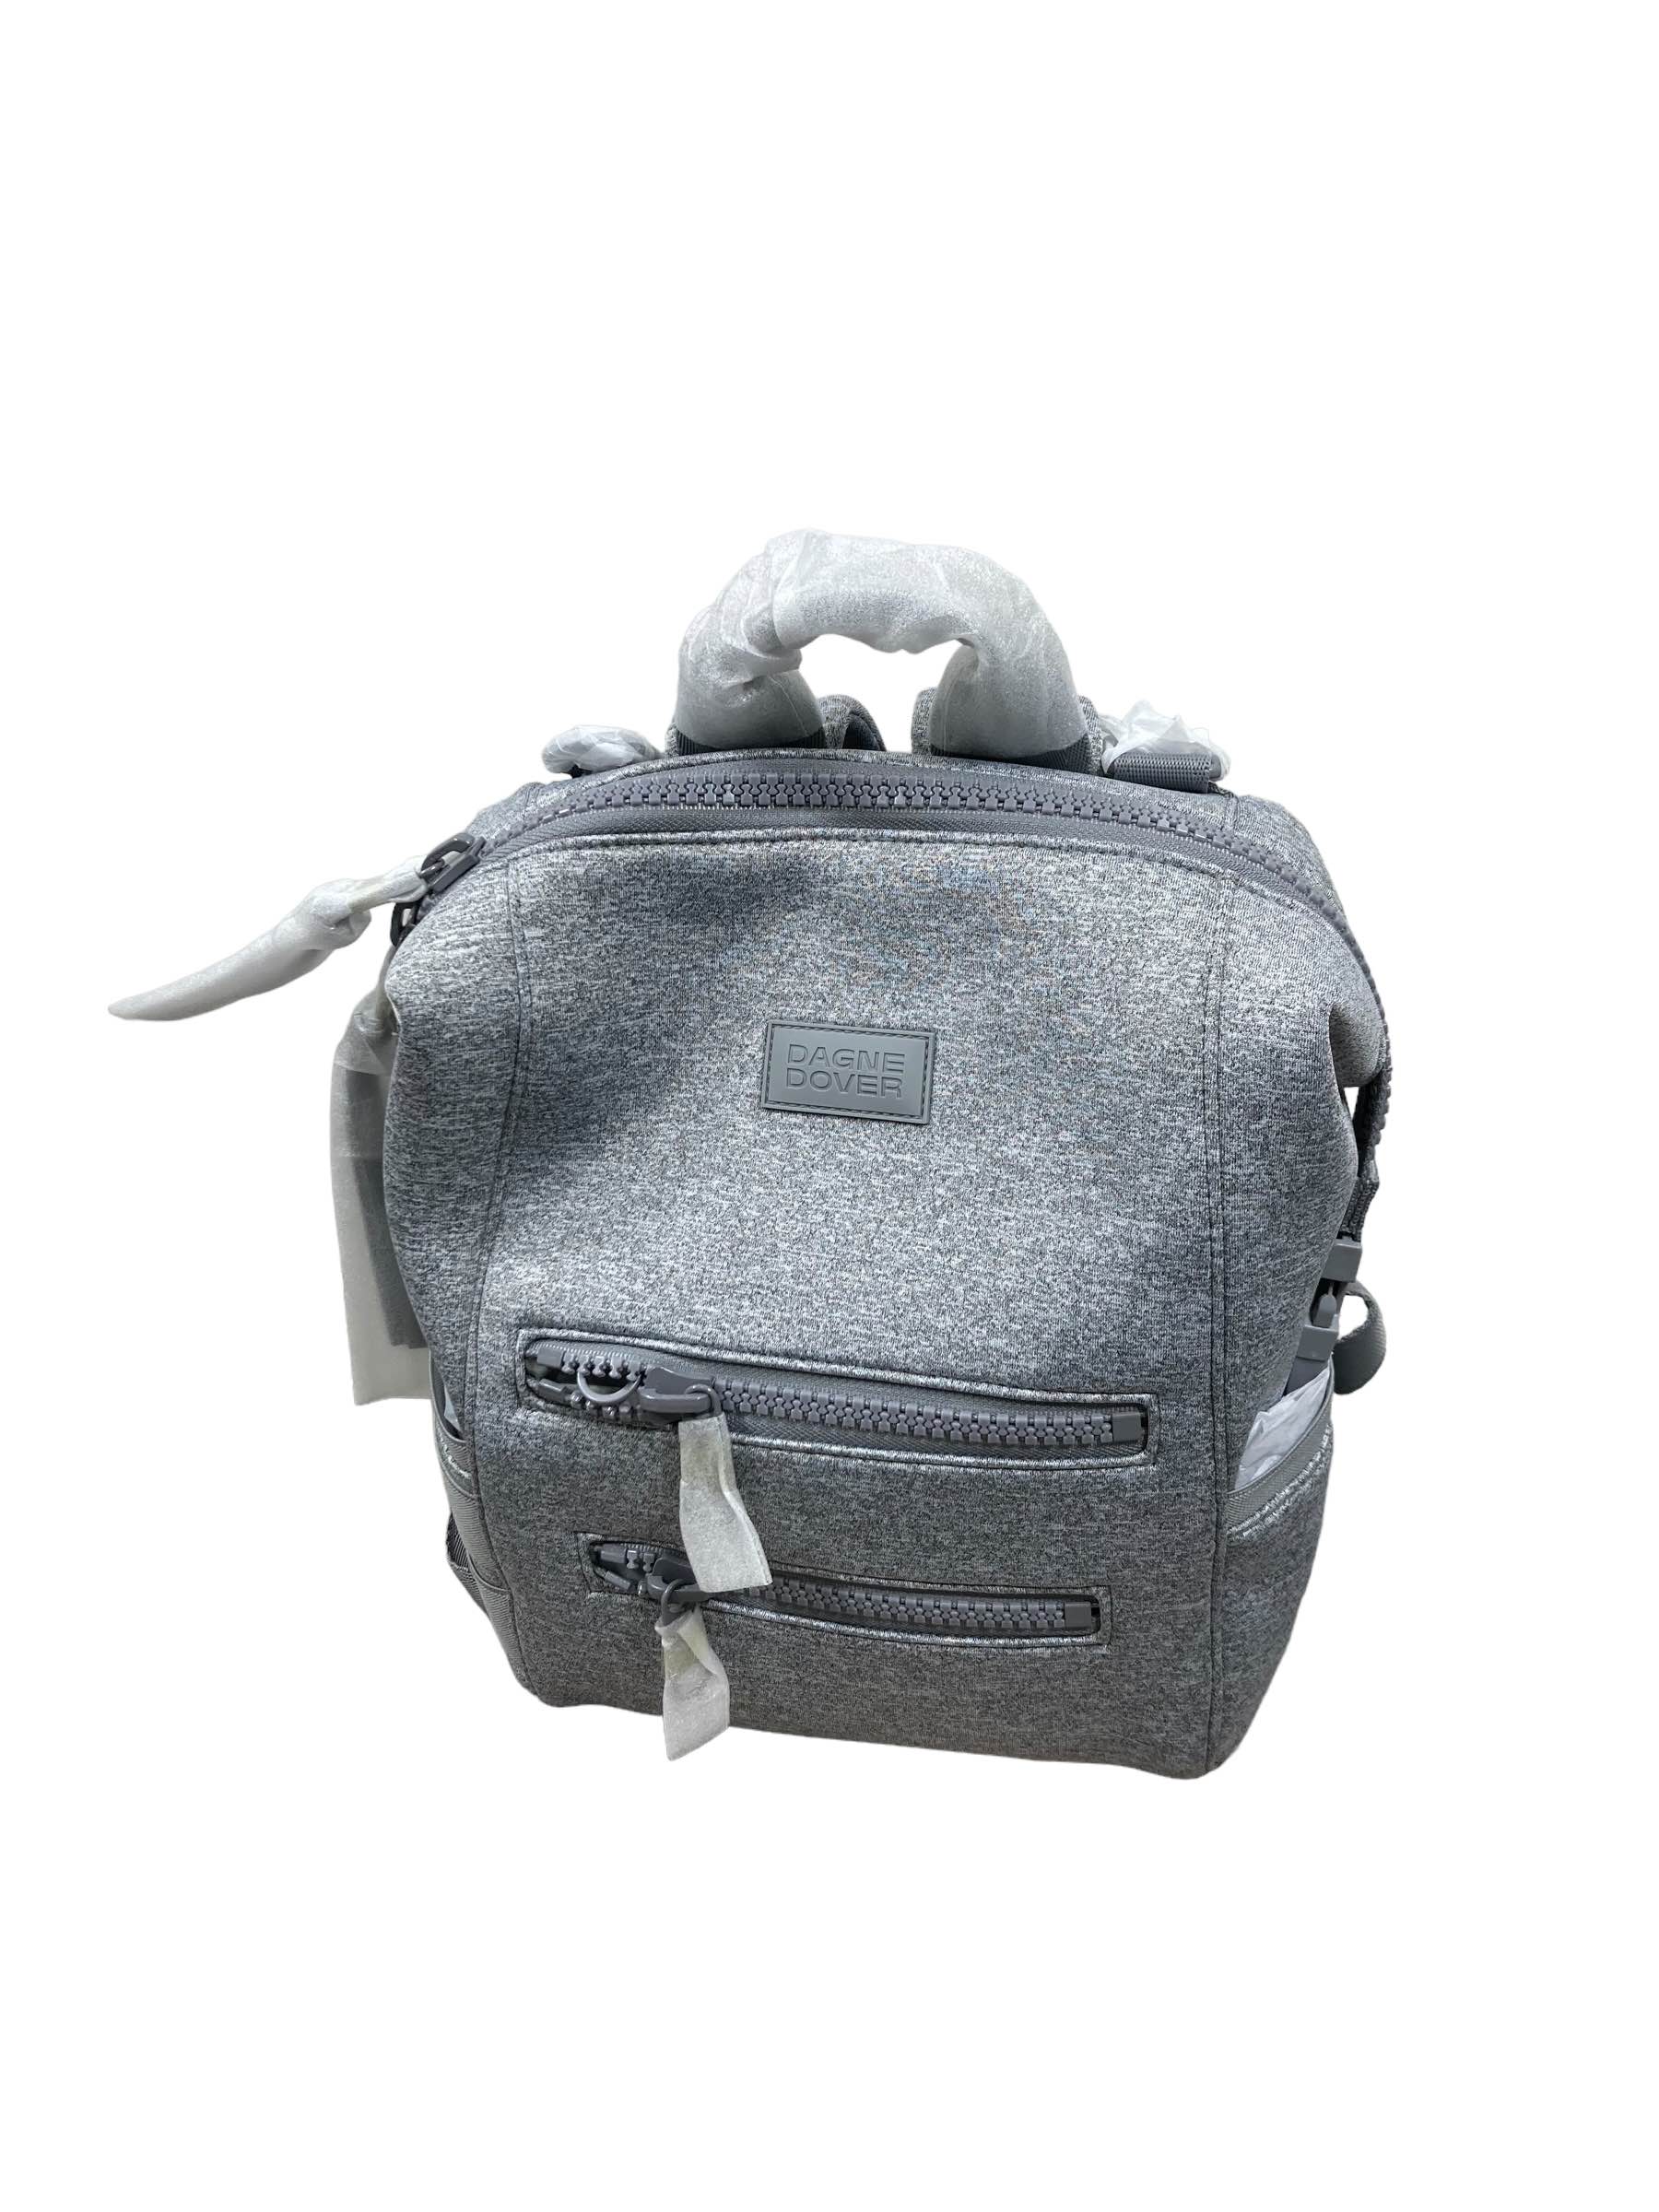 Dagne Dover Indi Diaper Bag Backpack Color Heather Grey Large New MSRP $215